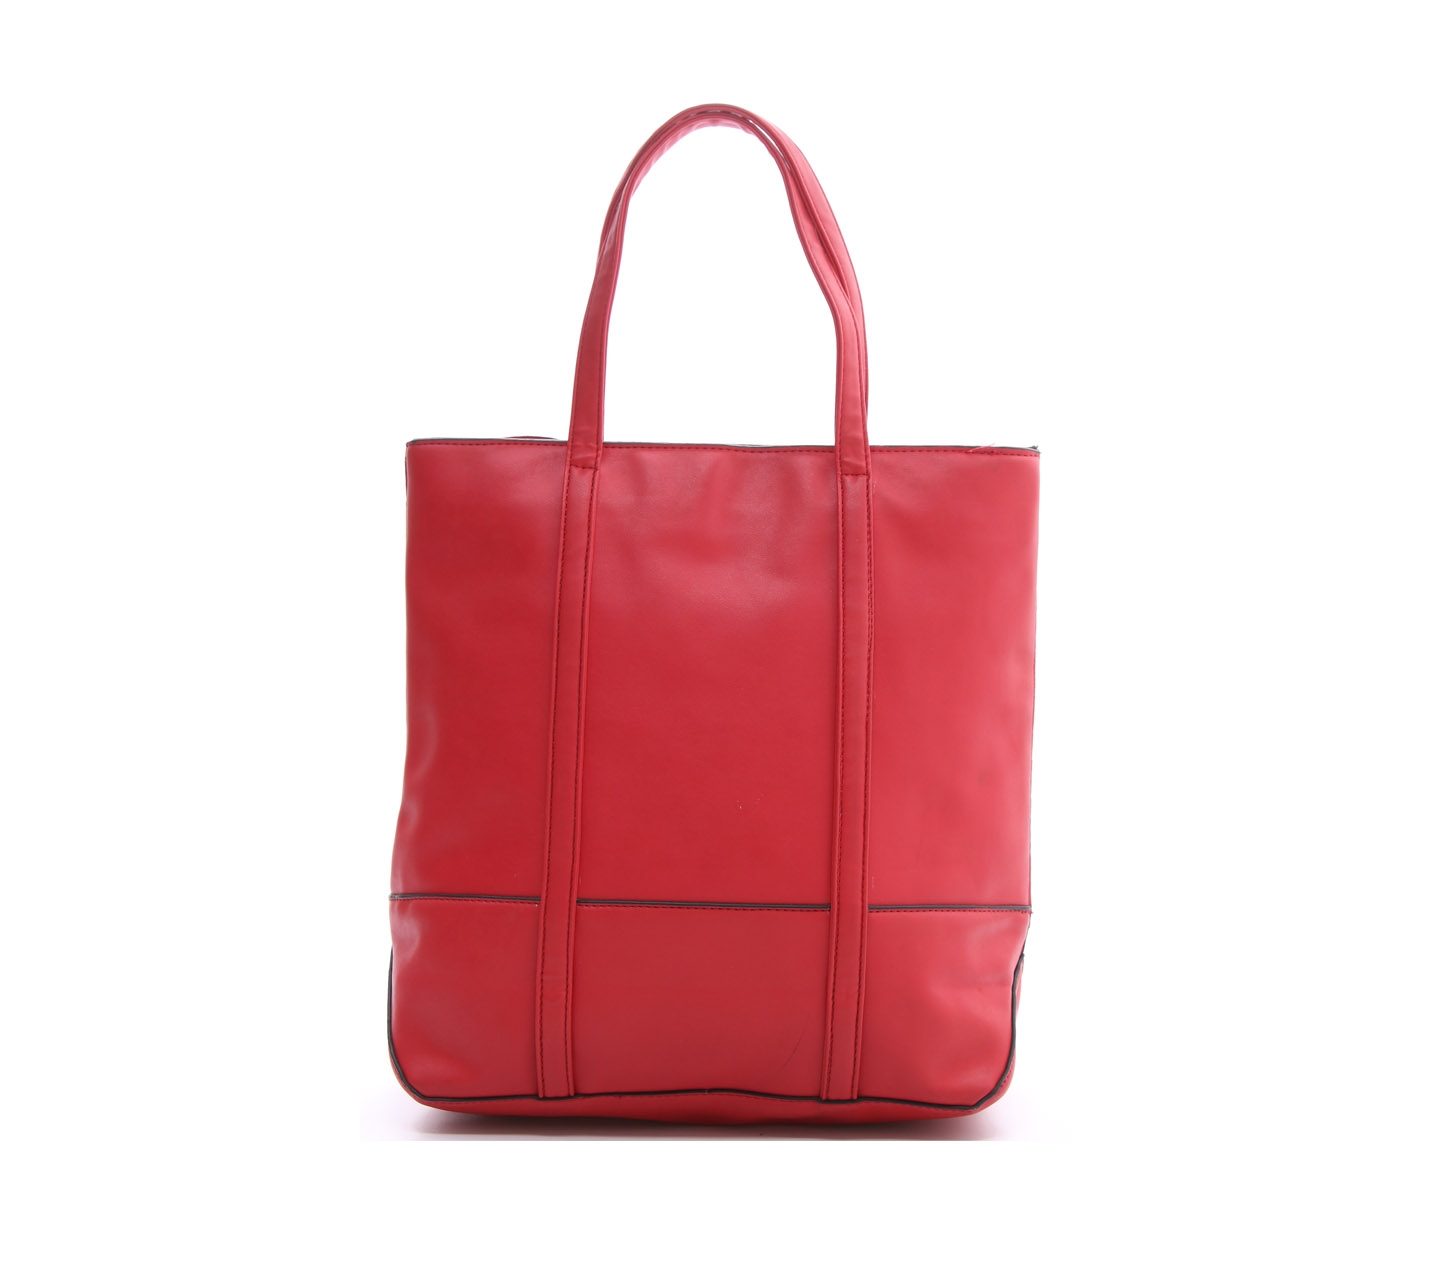 Les Femmes Red Tote Bag